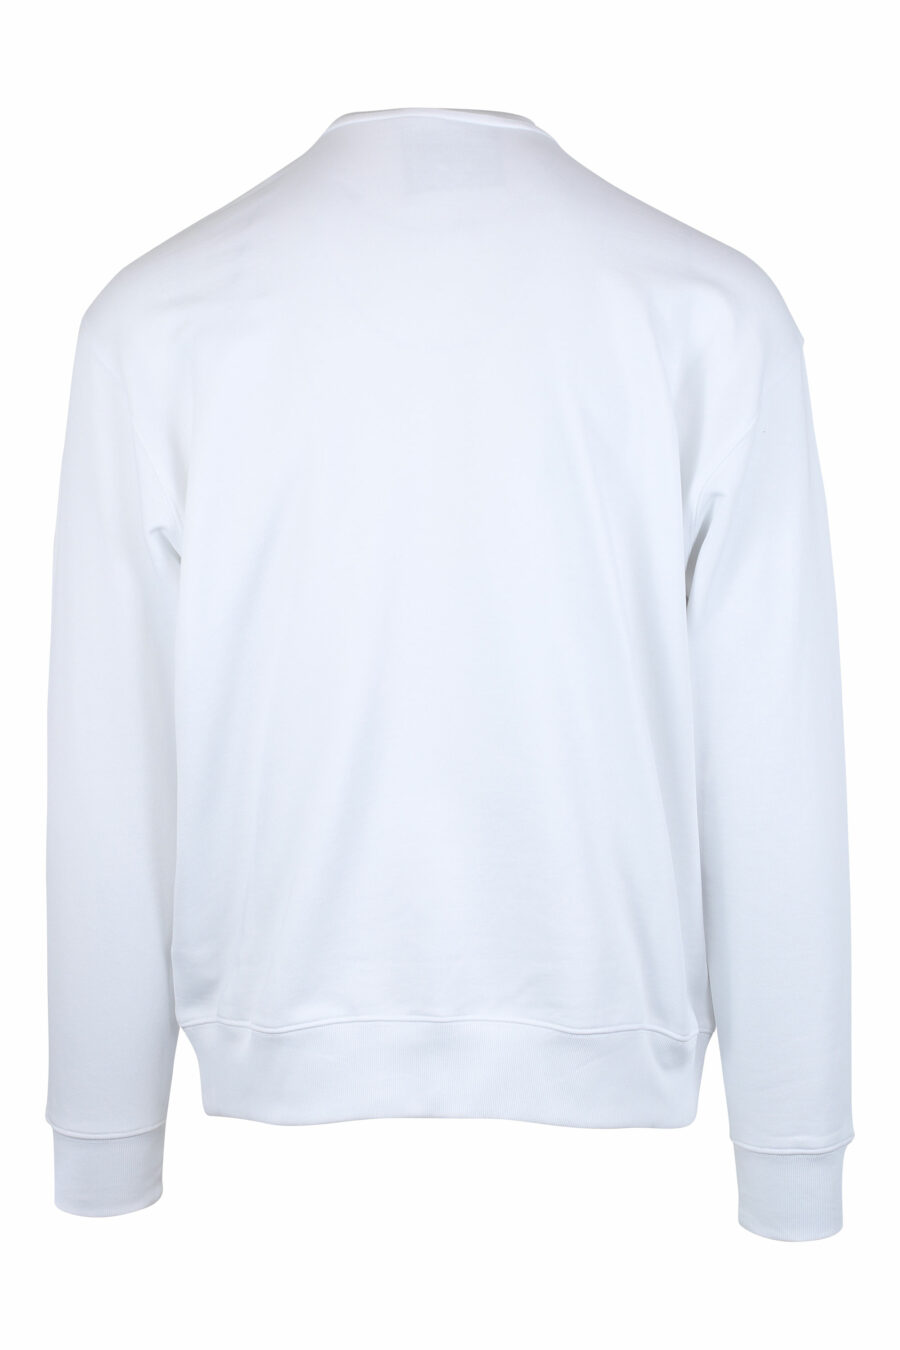 Weißes Sweatshirt mit einfarbigem Bären-Maxilogo - IMG 1363